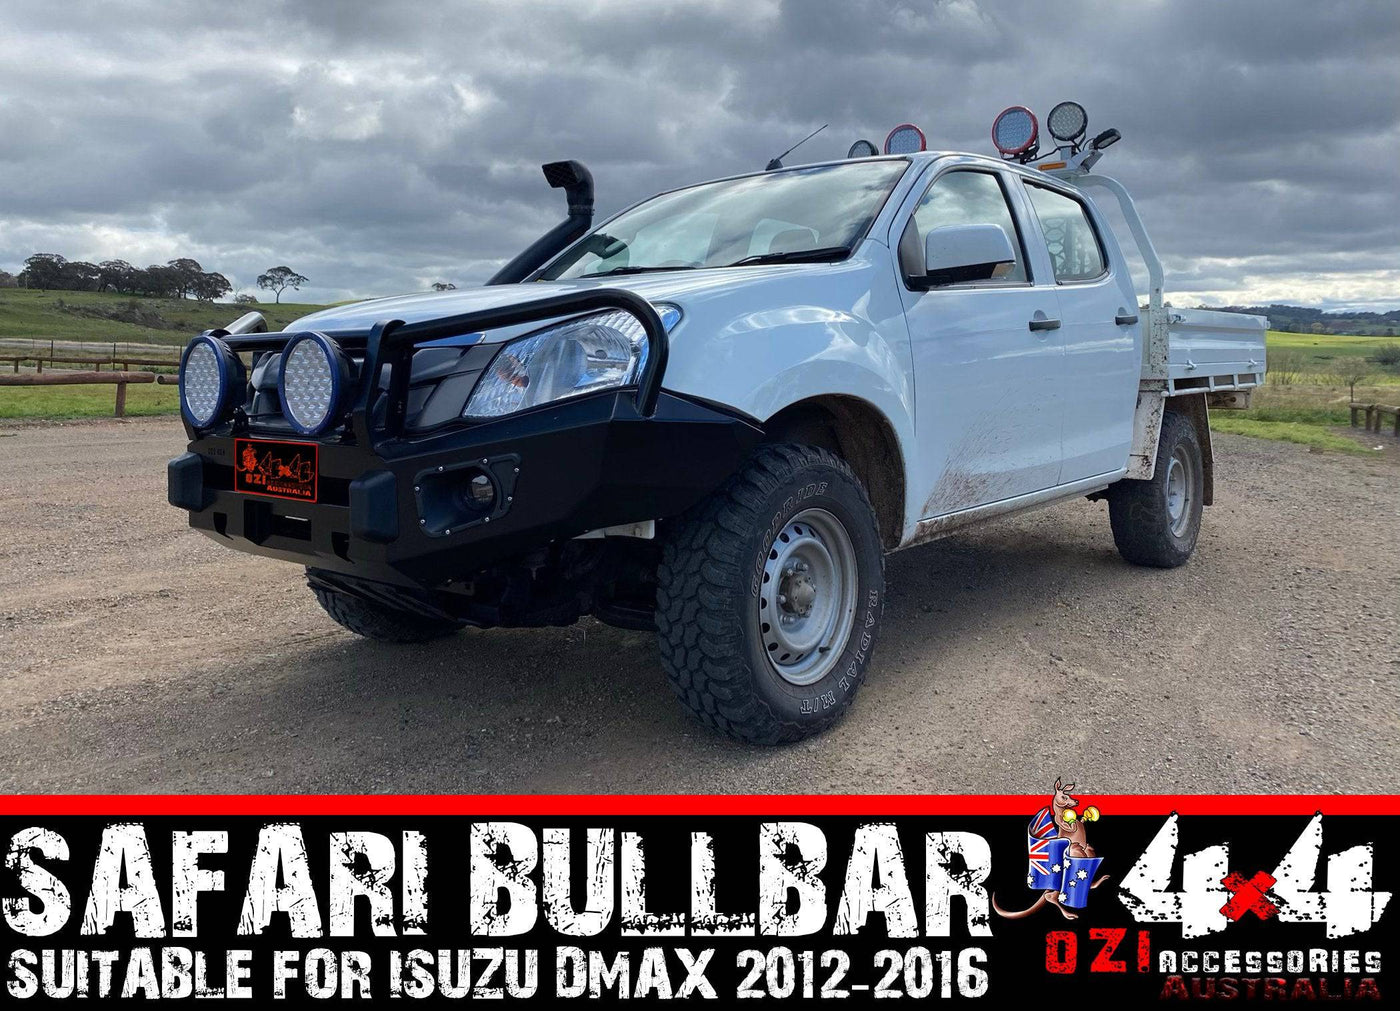 (Pre Order) Safari Bullbar Suits Isuzu D-Max 2012-2016